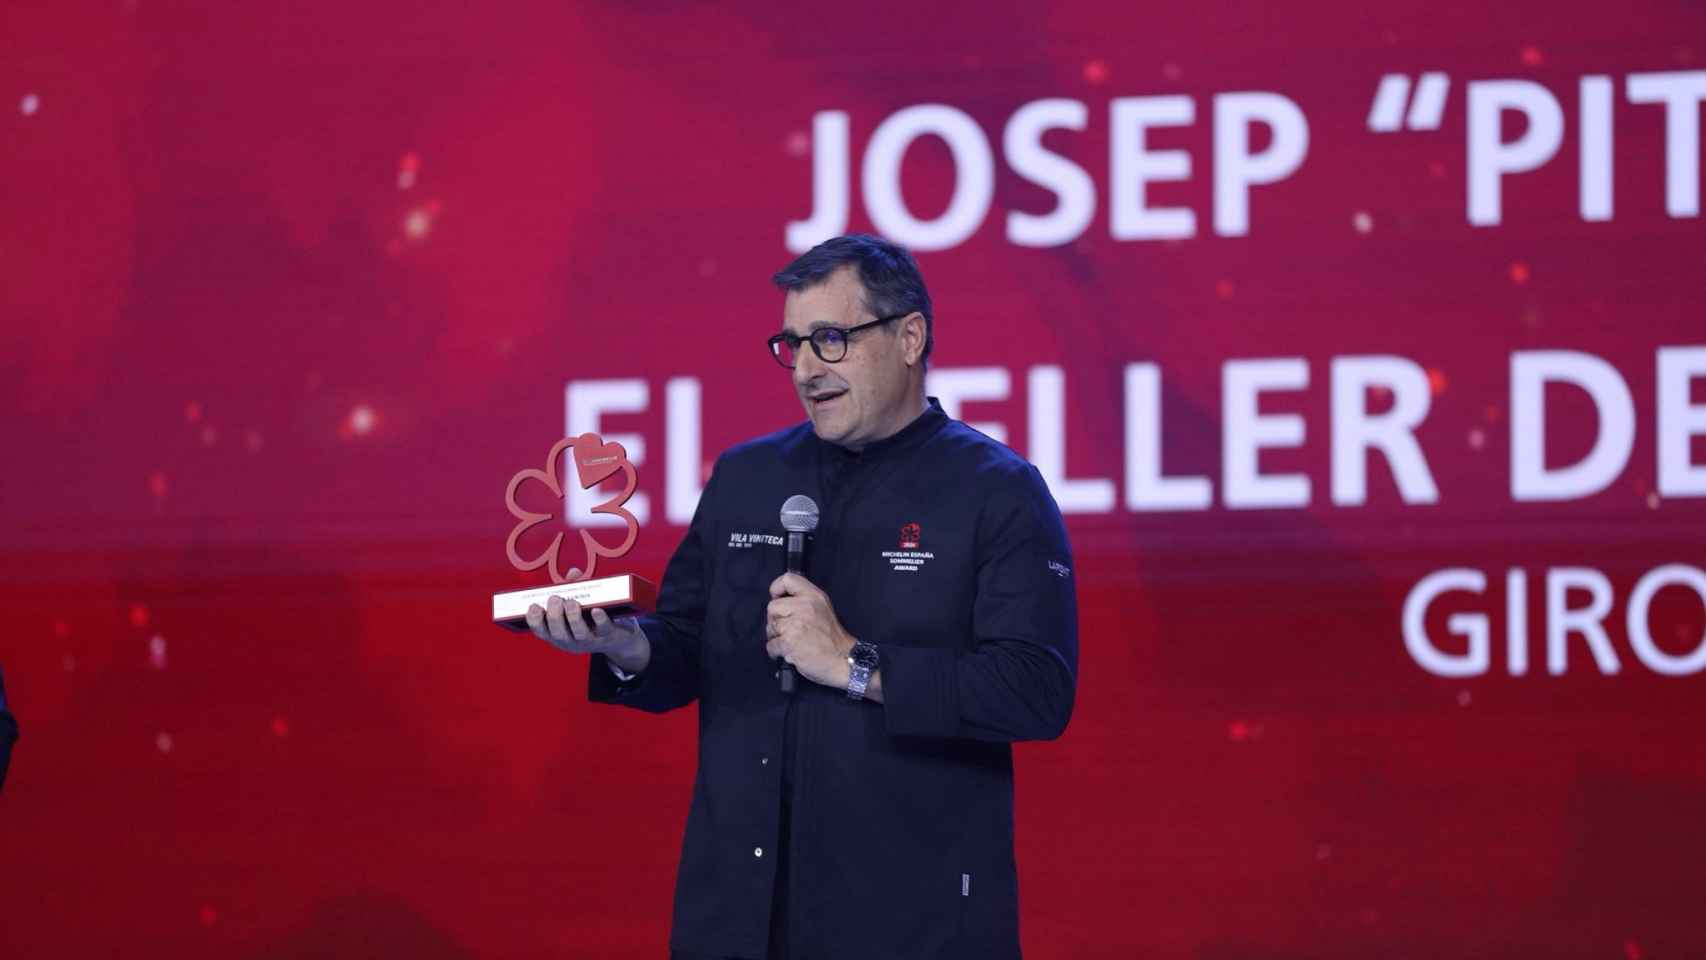 Josep Roca, de El Celler de Can Roca*** (Girona), recogiendo el premio al Mejor Sommelier de España